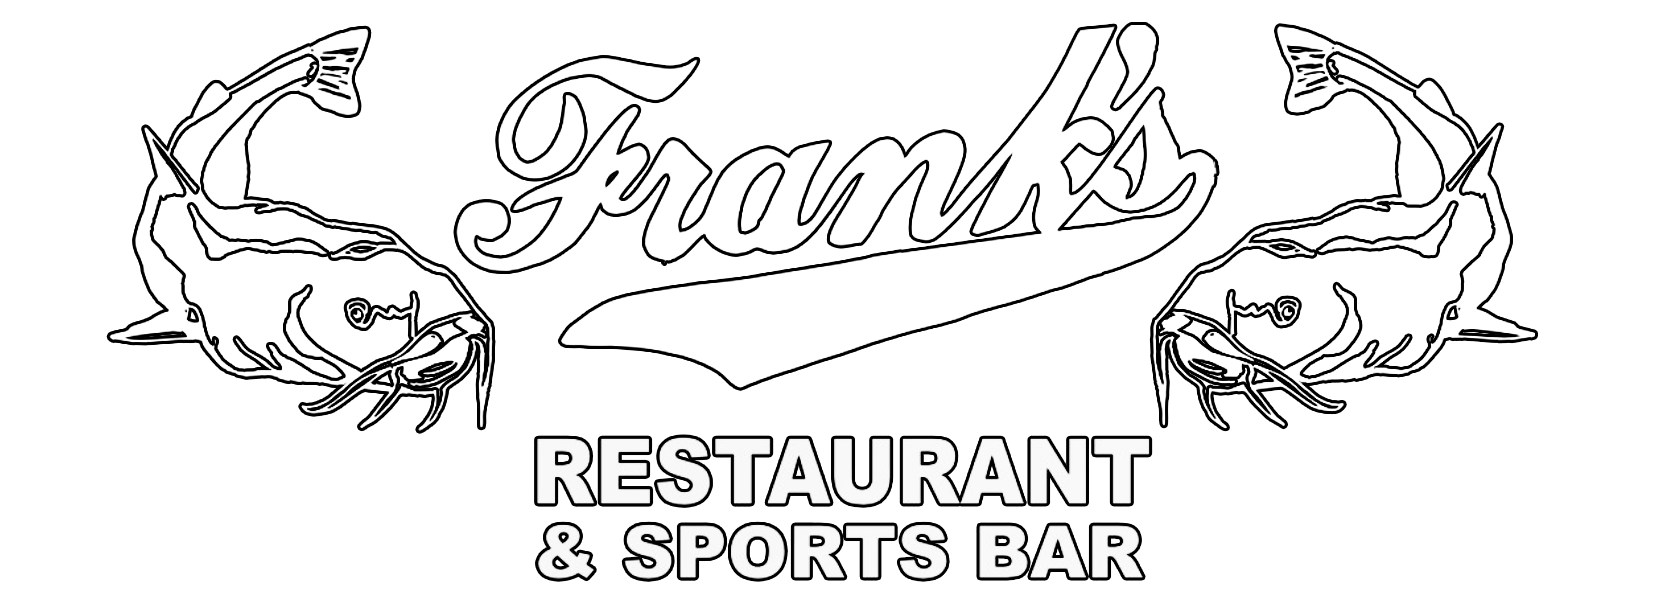 Frank's Restaurant